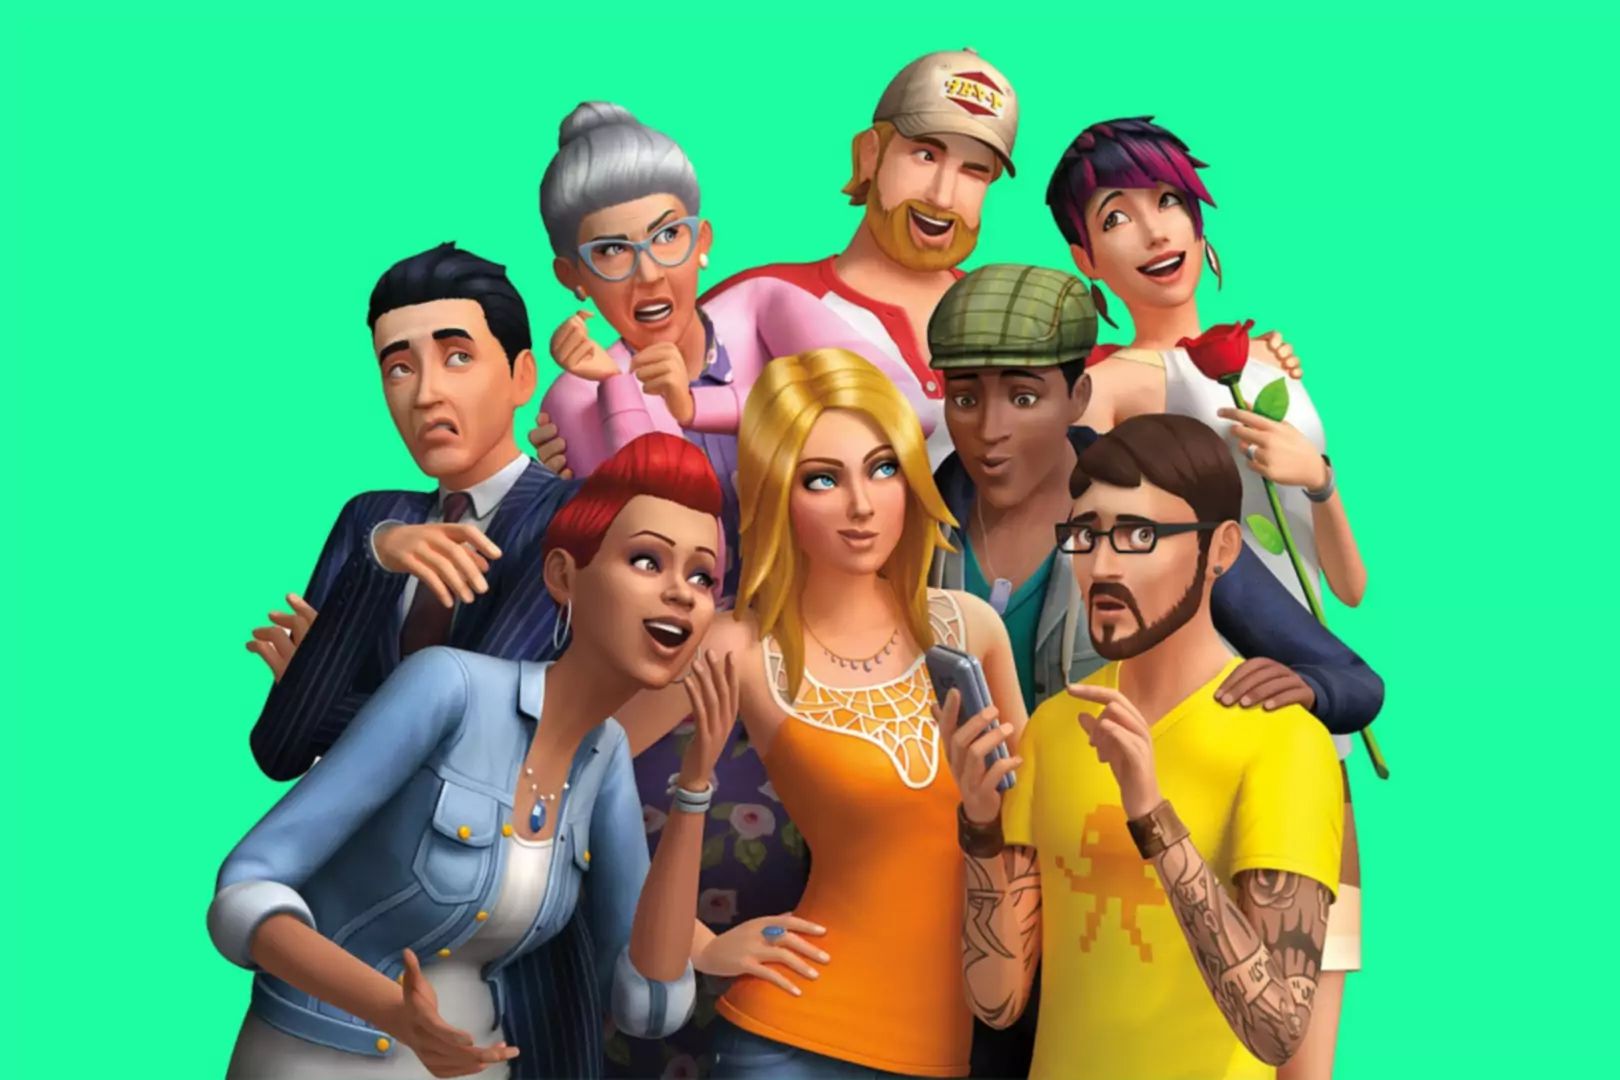 Personaje CGI Sims pozând împreună și făcând expresii prostești